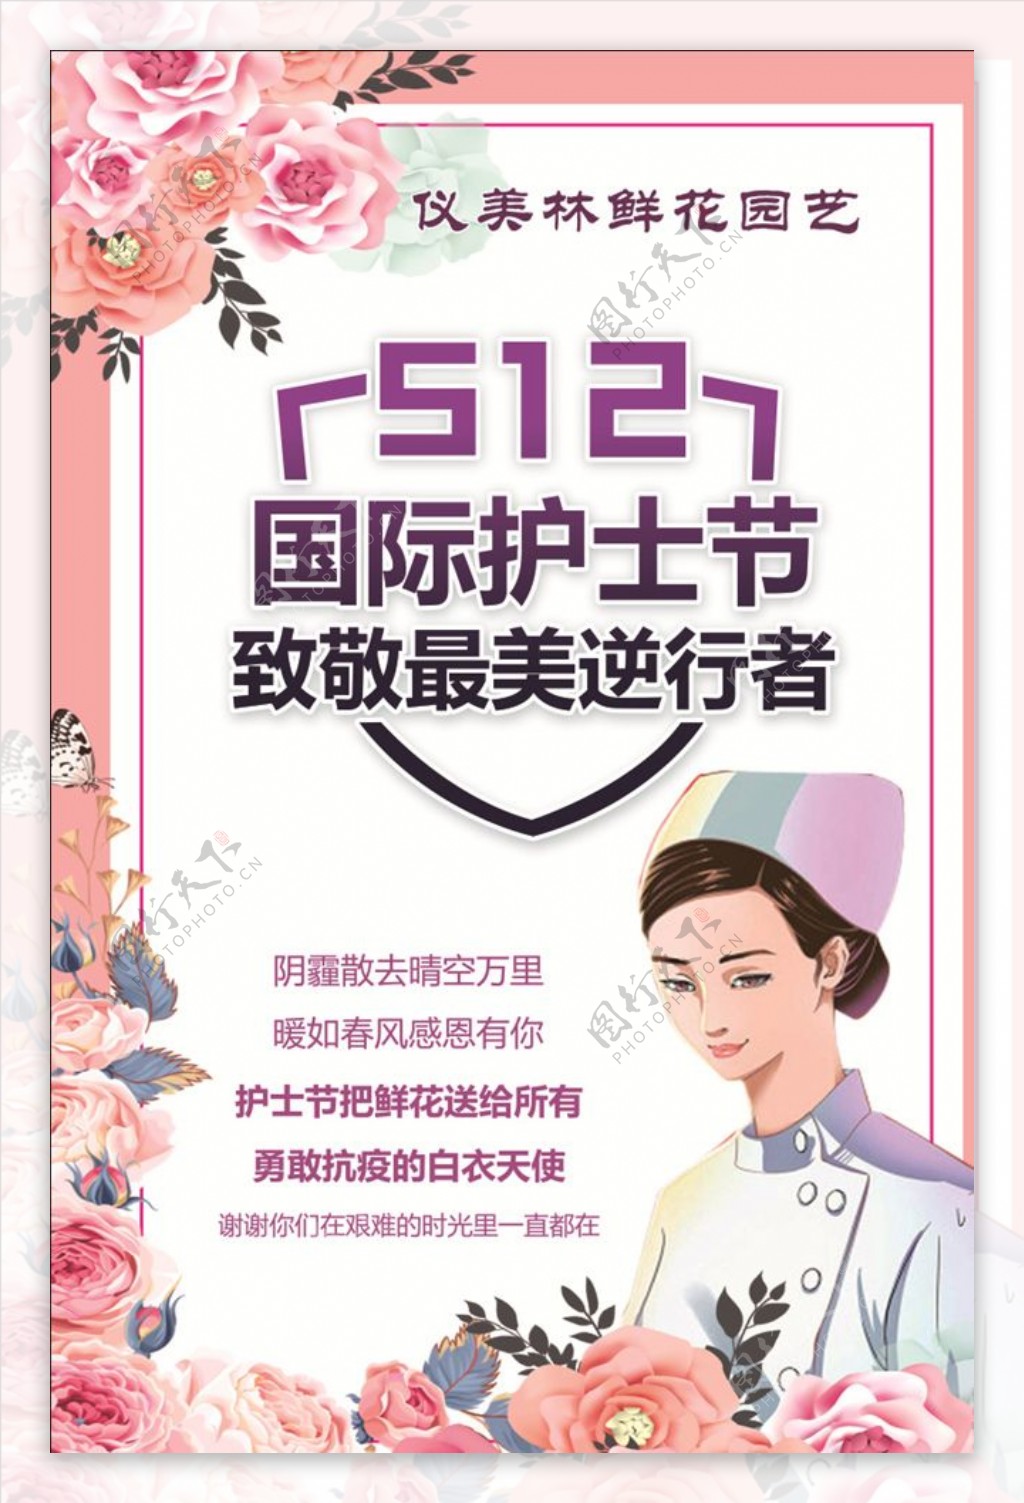 512护士节小清新海报